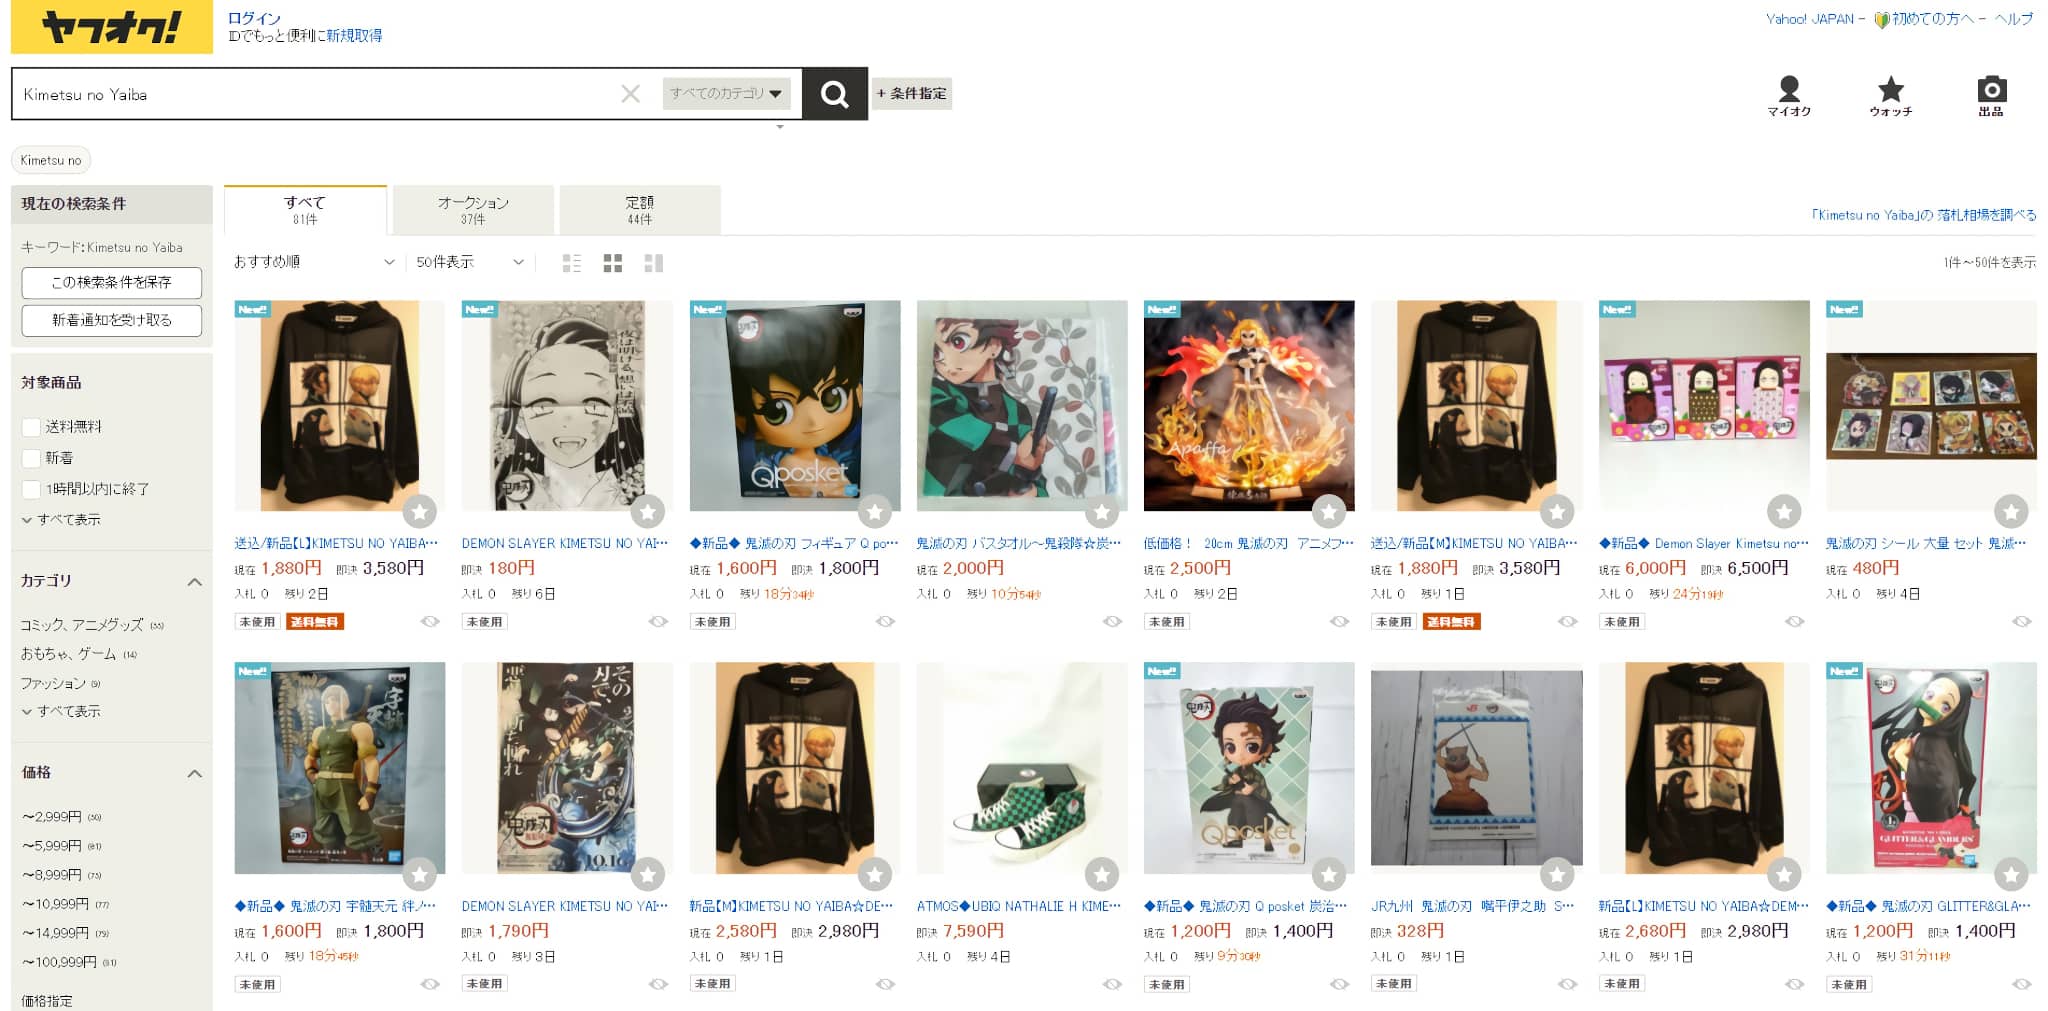 Boutique de produits dérivés mangas et animes Yahoo Auction